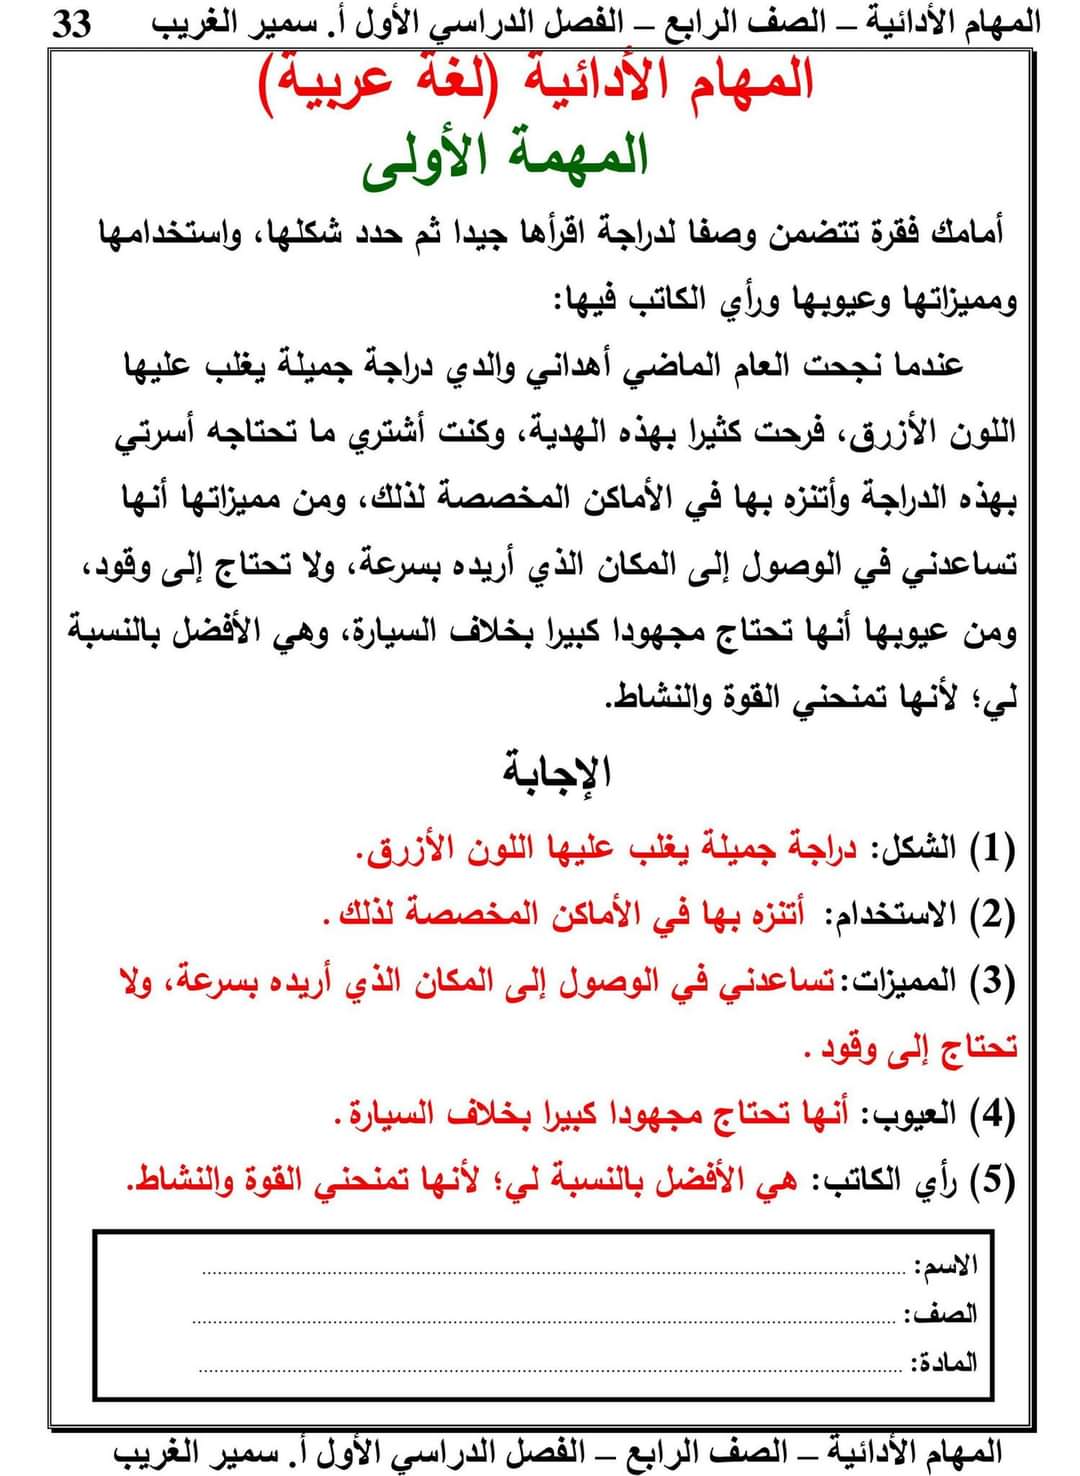 اجابات المهام الادائية الرسمية الصف الرابع الابتدائي مدارس العربي الترم الاول ٢٠٢٤